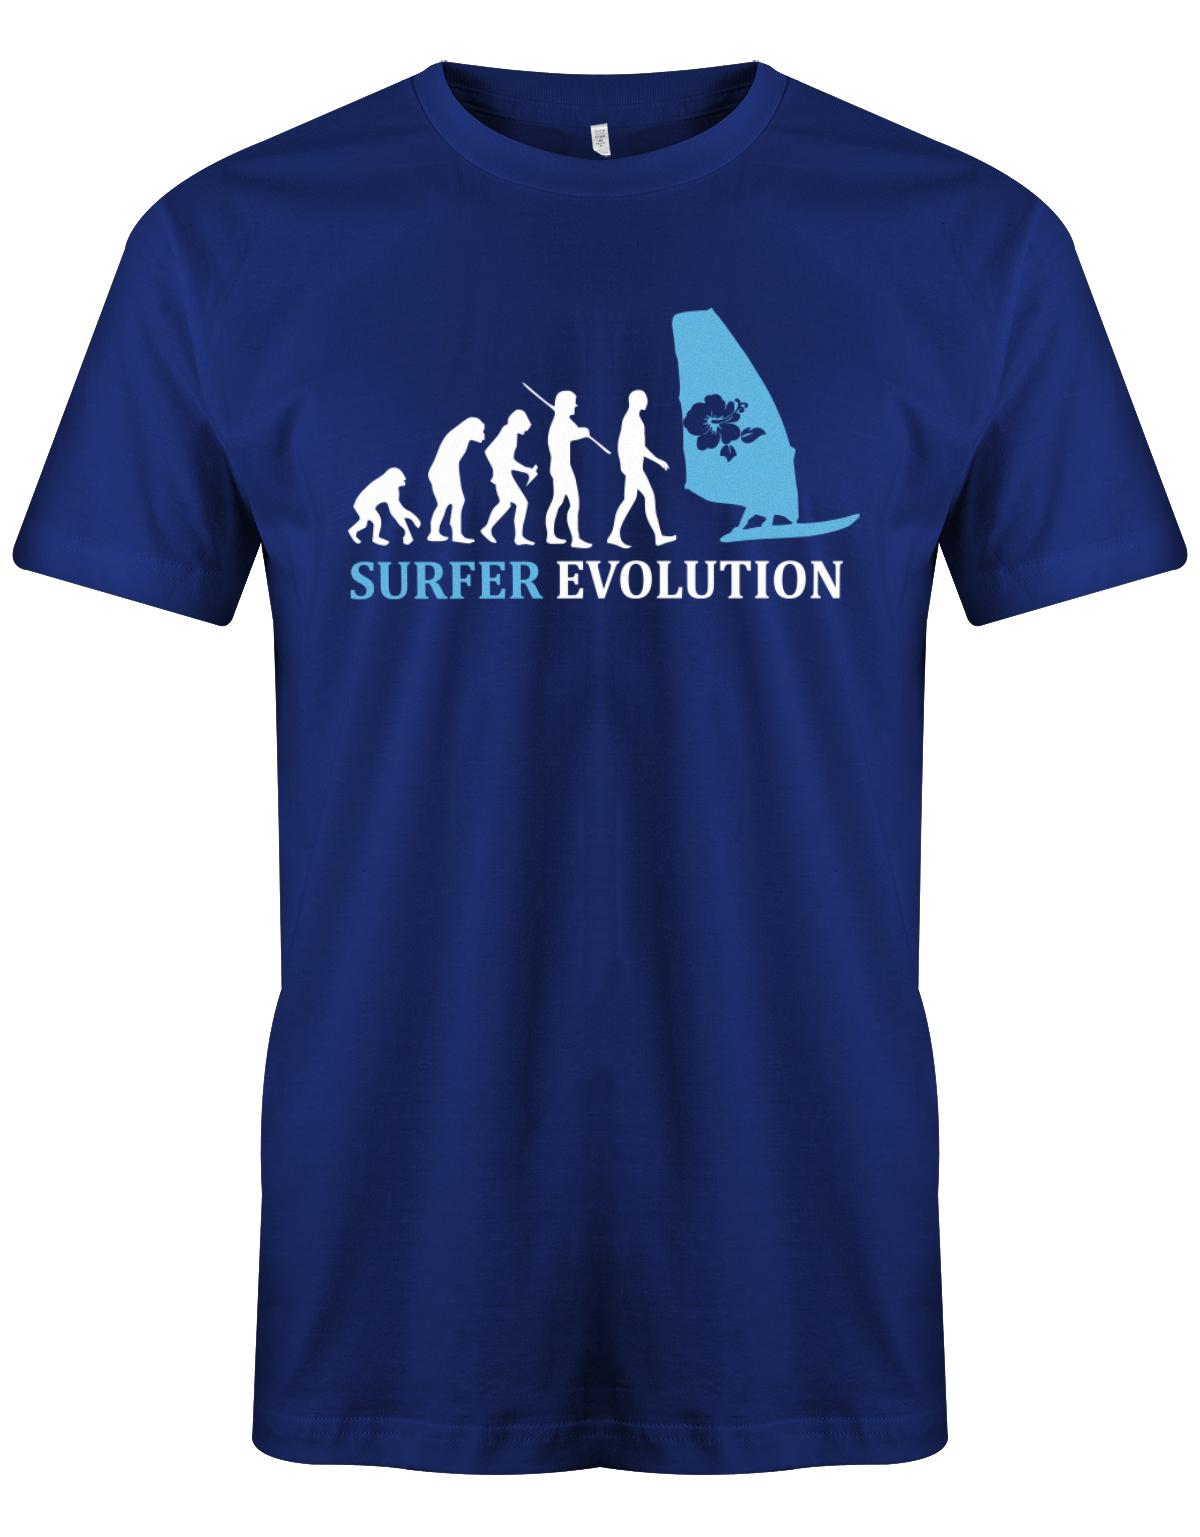 Surfer-Evolution-Surf-Herren-Shirt-Royalblau